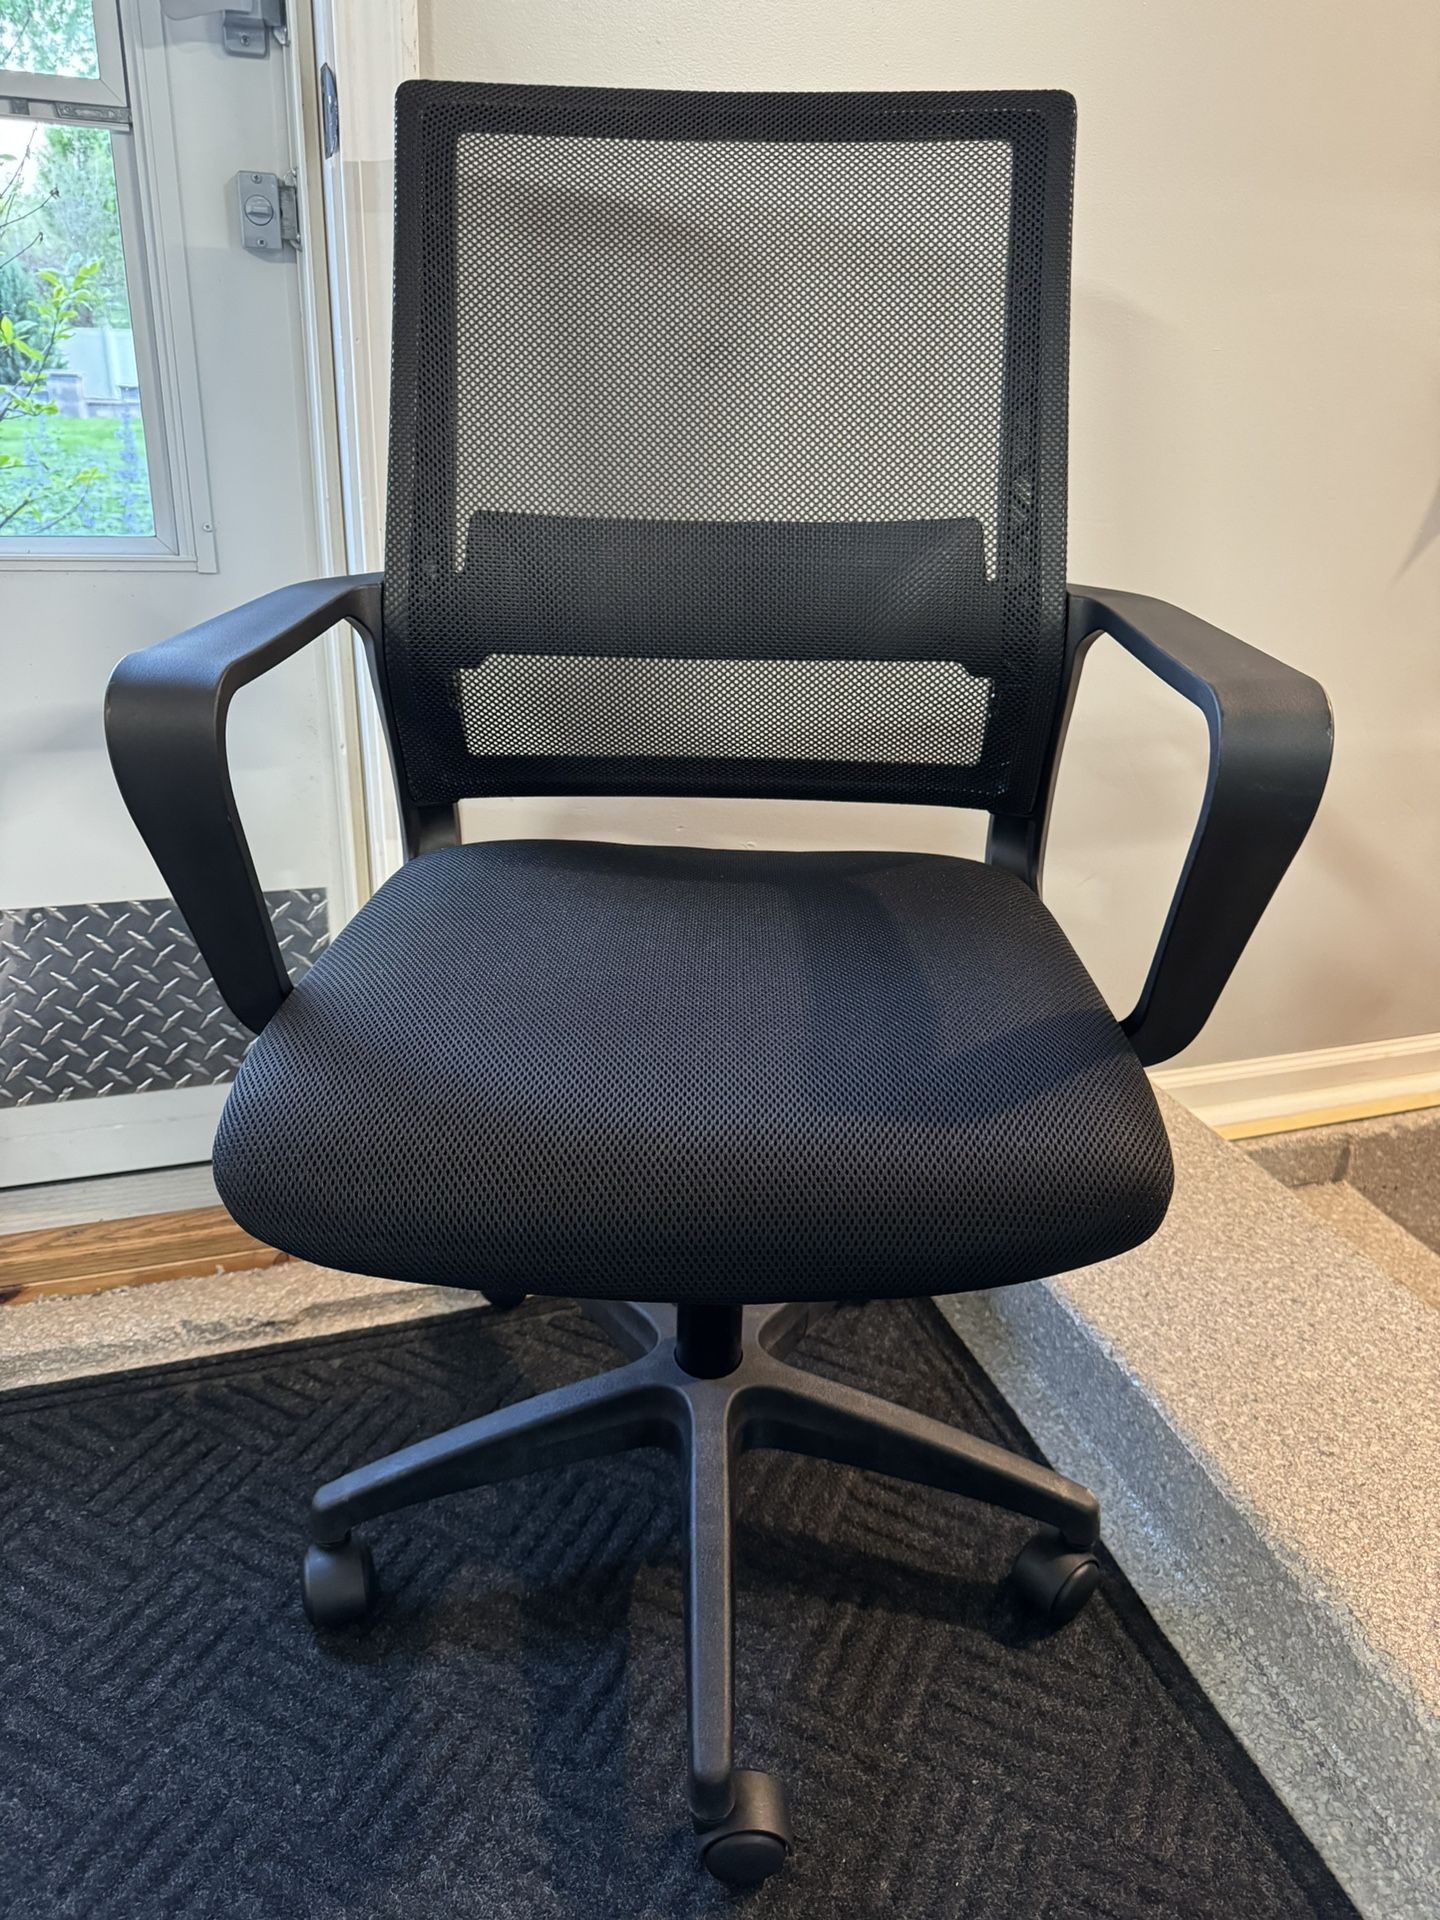 Brand New Black Mesh Back Ergonomic Office Chair 